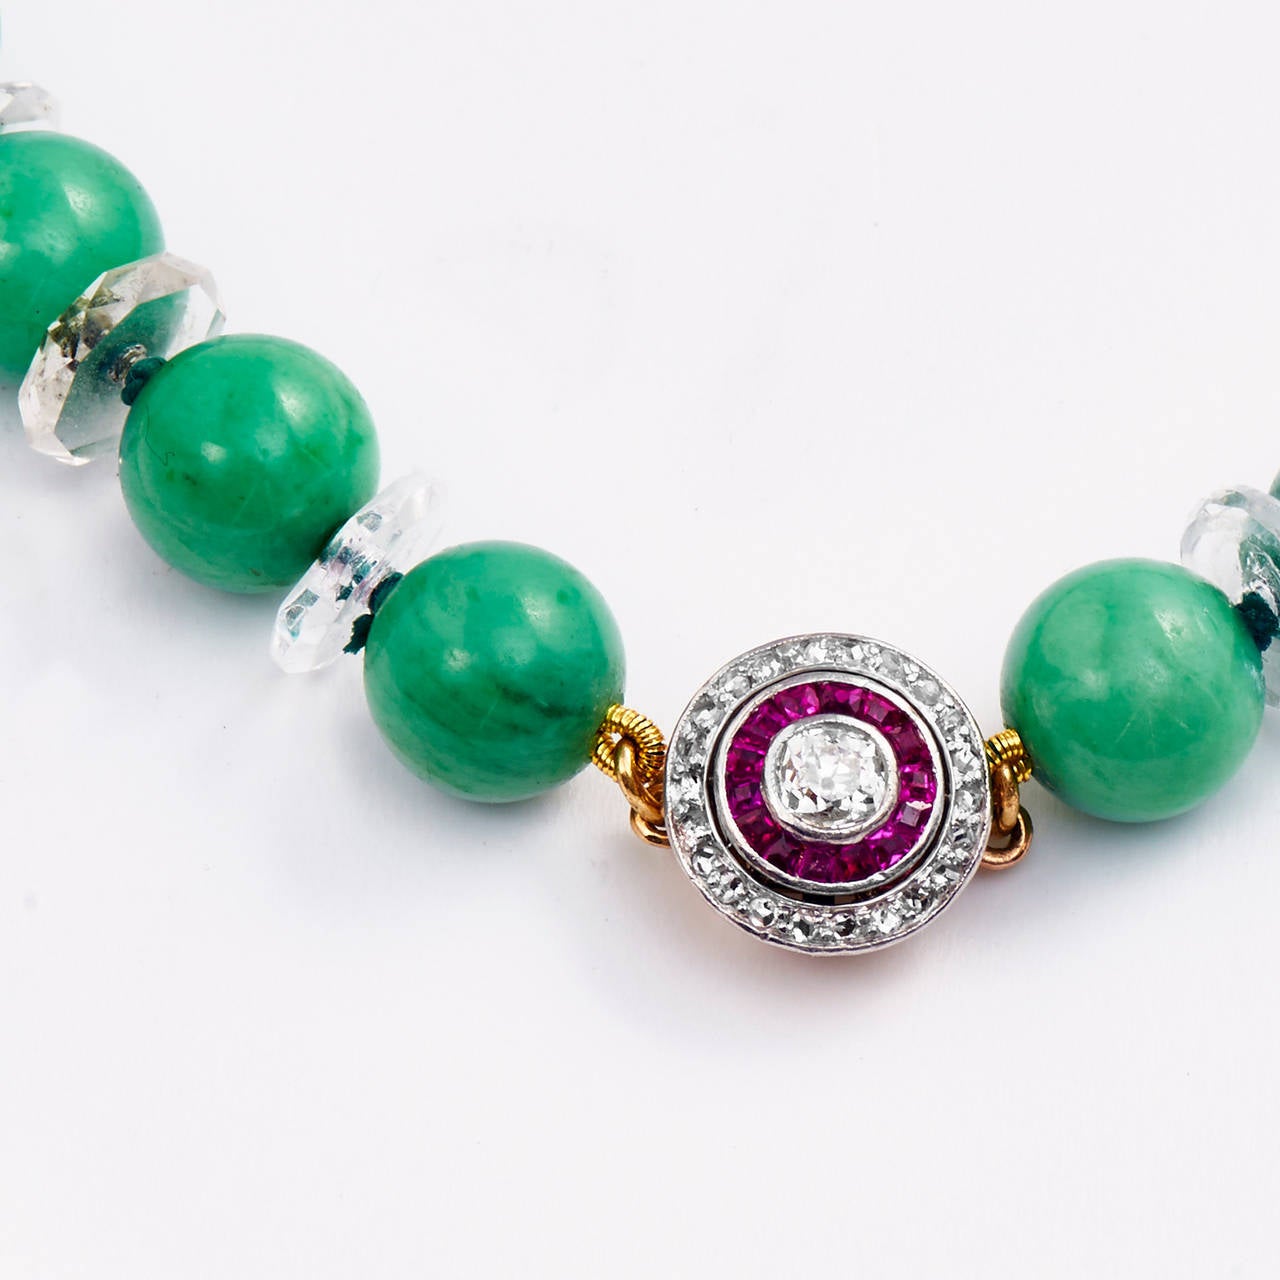 GIA zertifiziert 5,64 Karat, 37 natürliche transluzente Jadeit Perlenkette Art Deco

Jadeit Jade ist die seltenste und wertvollste Form von Jade. 
Die verlockende natürliche grüne Apfelfarbe dieser Halskette ist eine der am meisten geschätzten